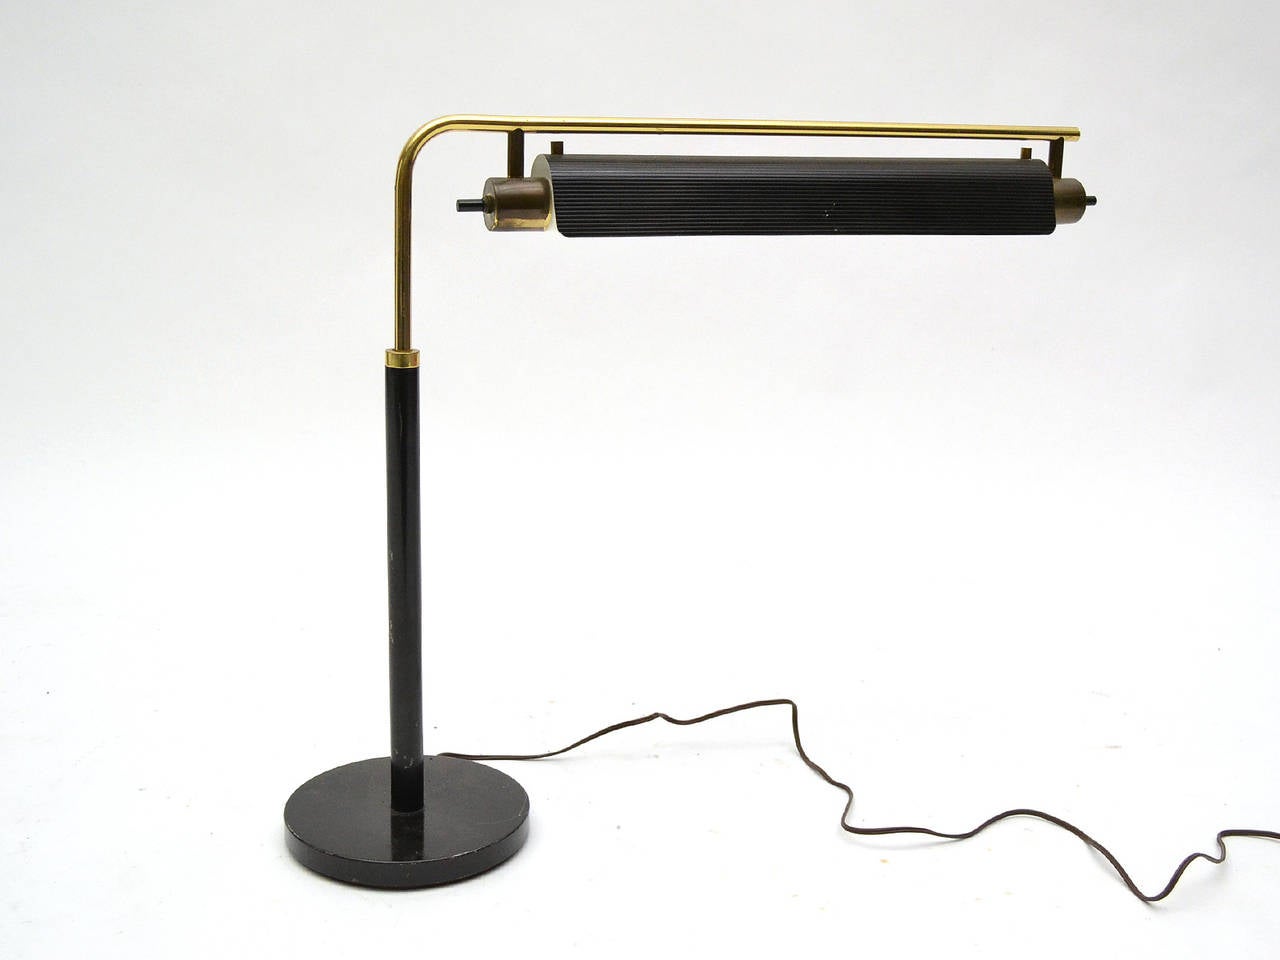 Enameled Gerald Thurston Table Lamp by Lightolier